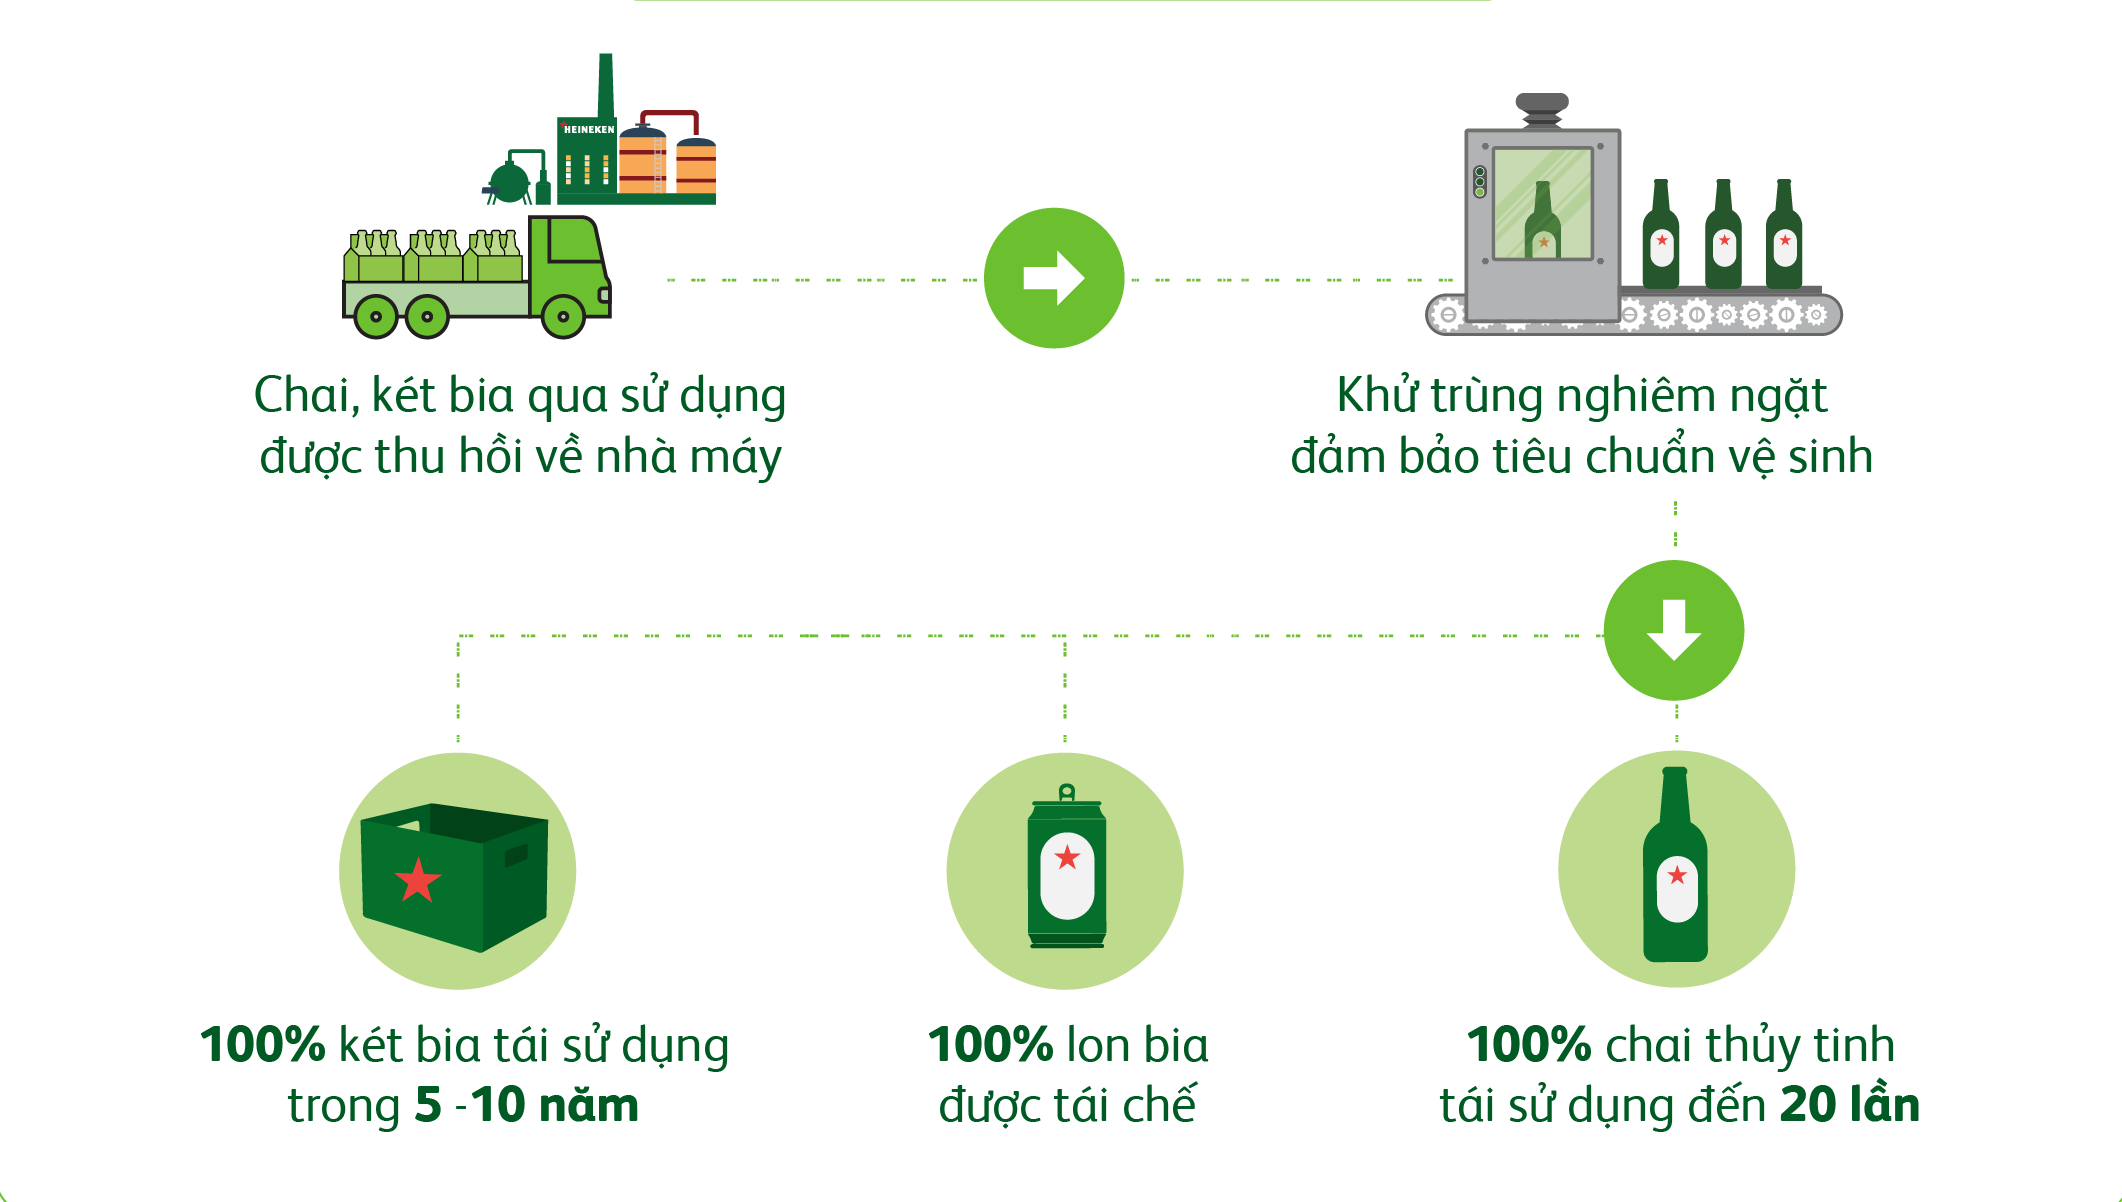 Vỏ chai, lon và két bia của Heineken Việt Nam được tái chế, tái sử dụng nhằm tối ưu hóa tài nguyên